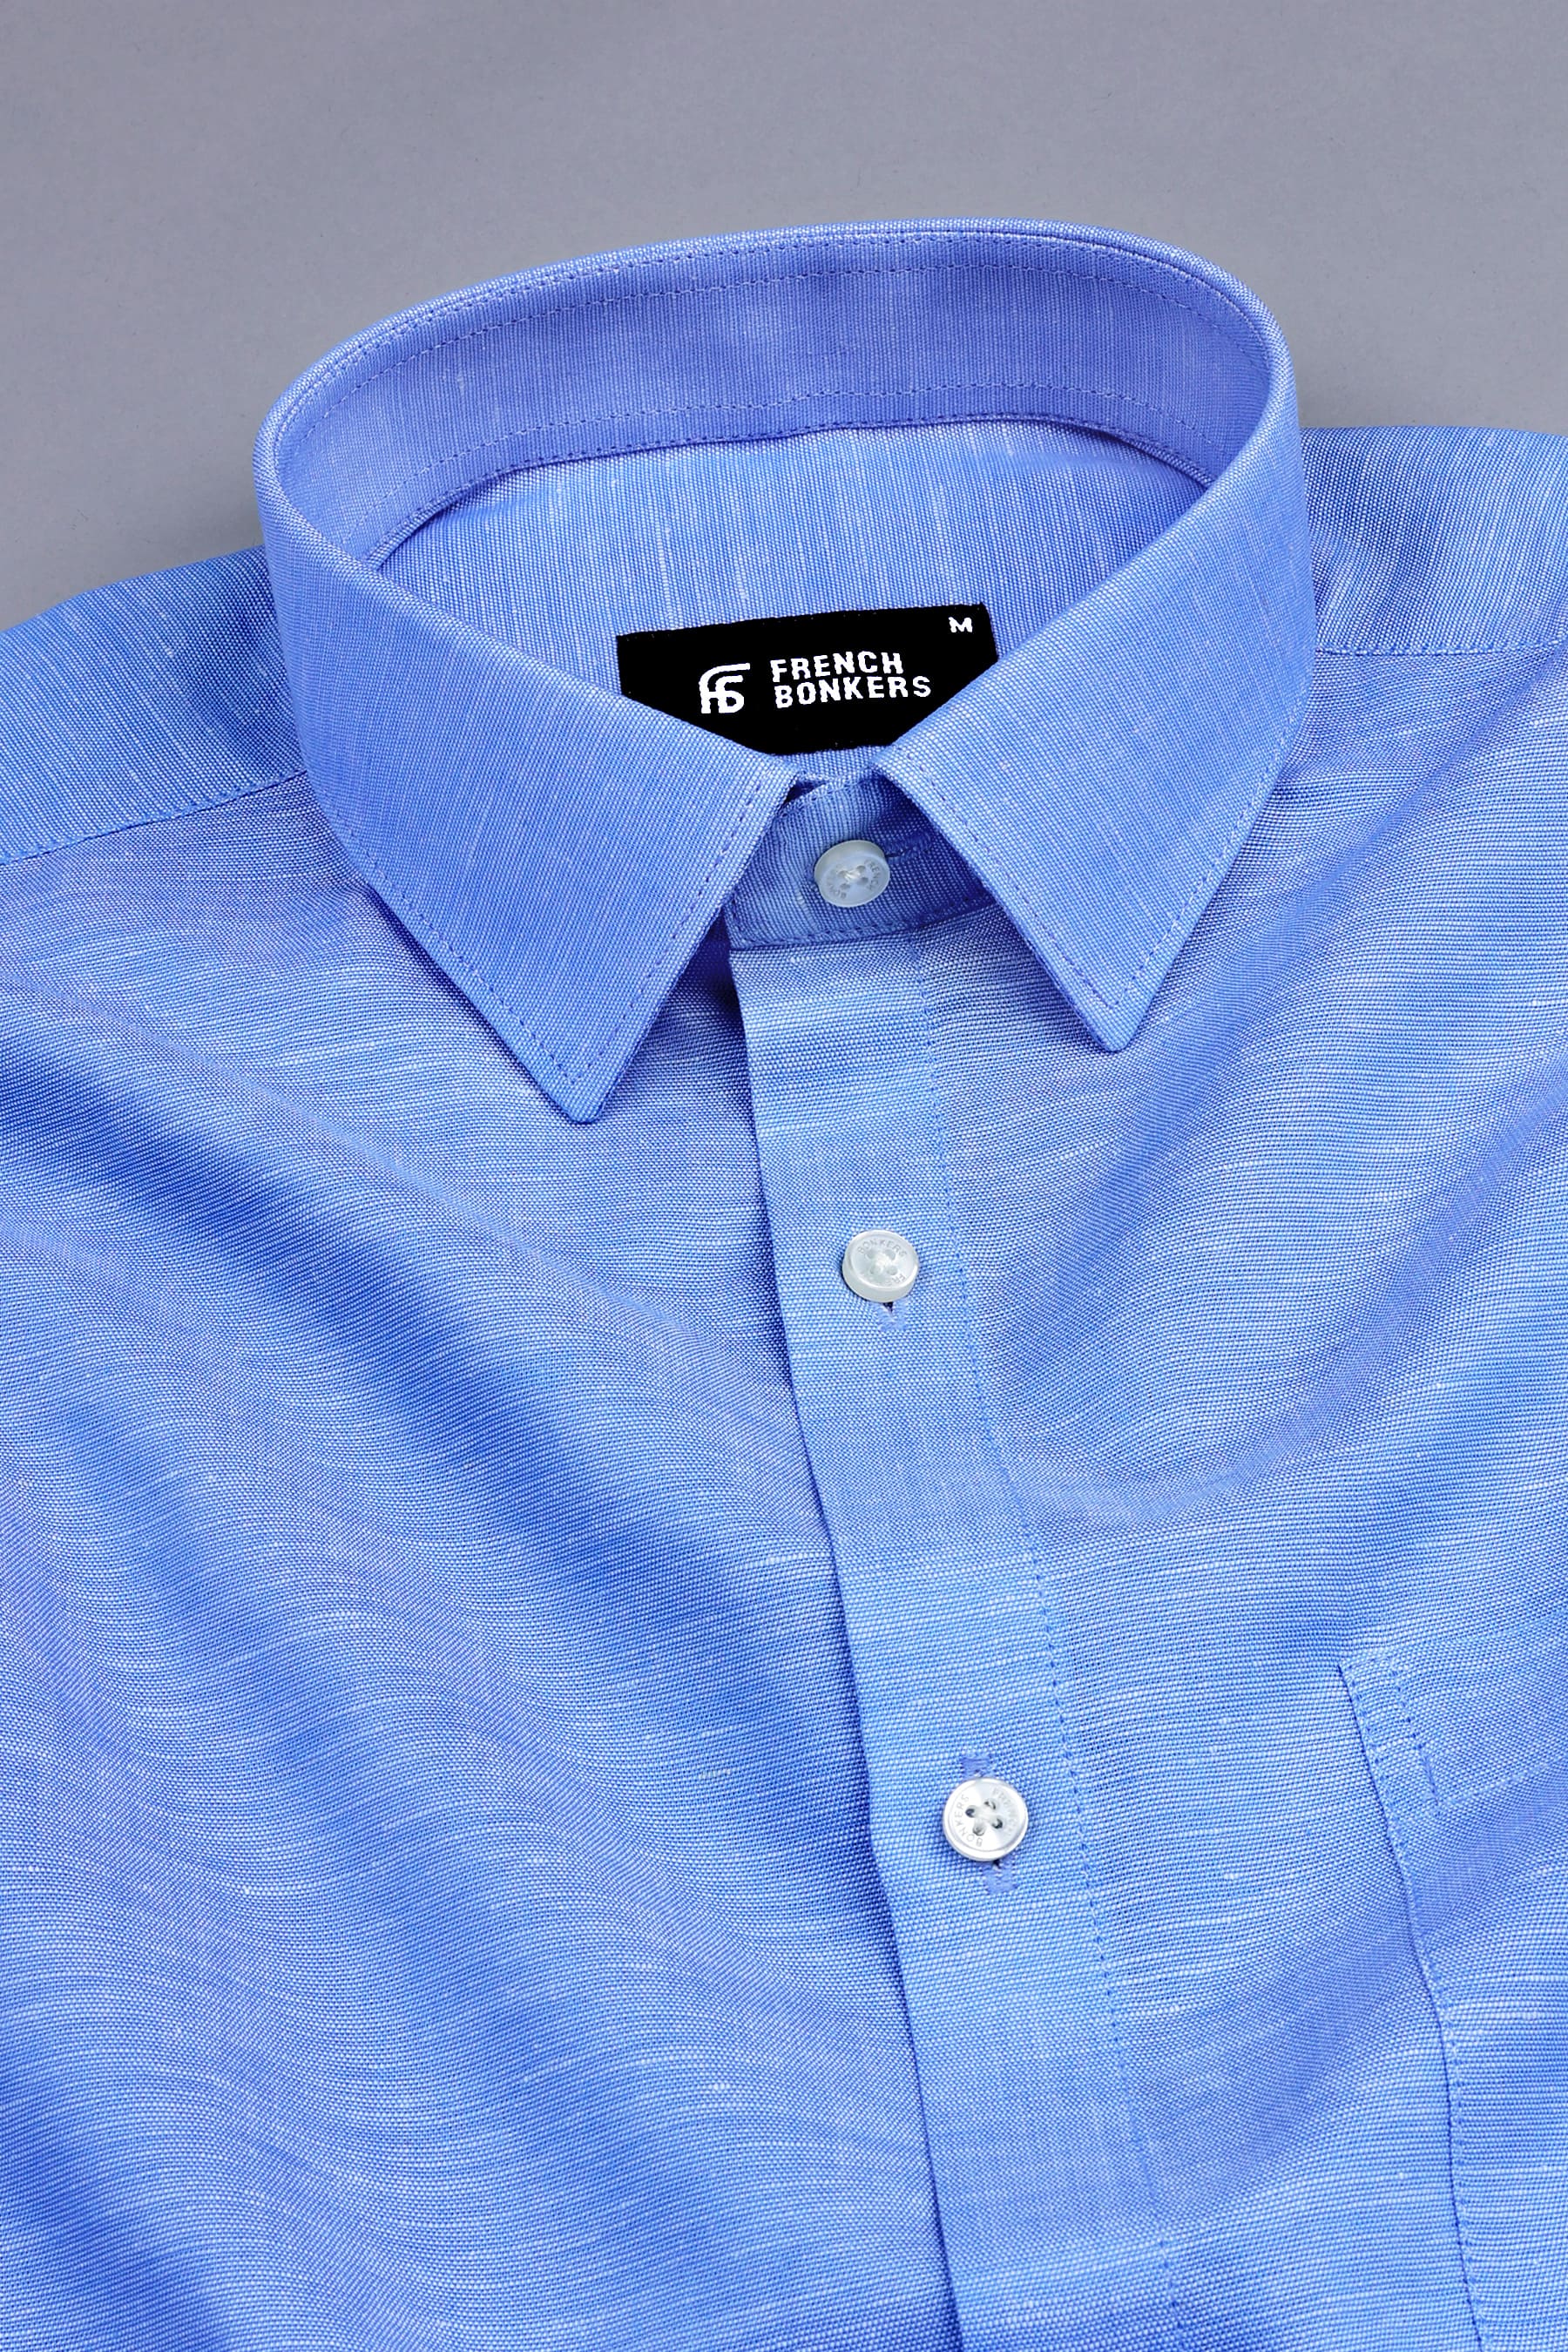 Lapis blue net texture cotton shirt